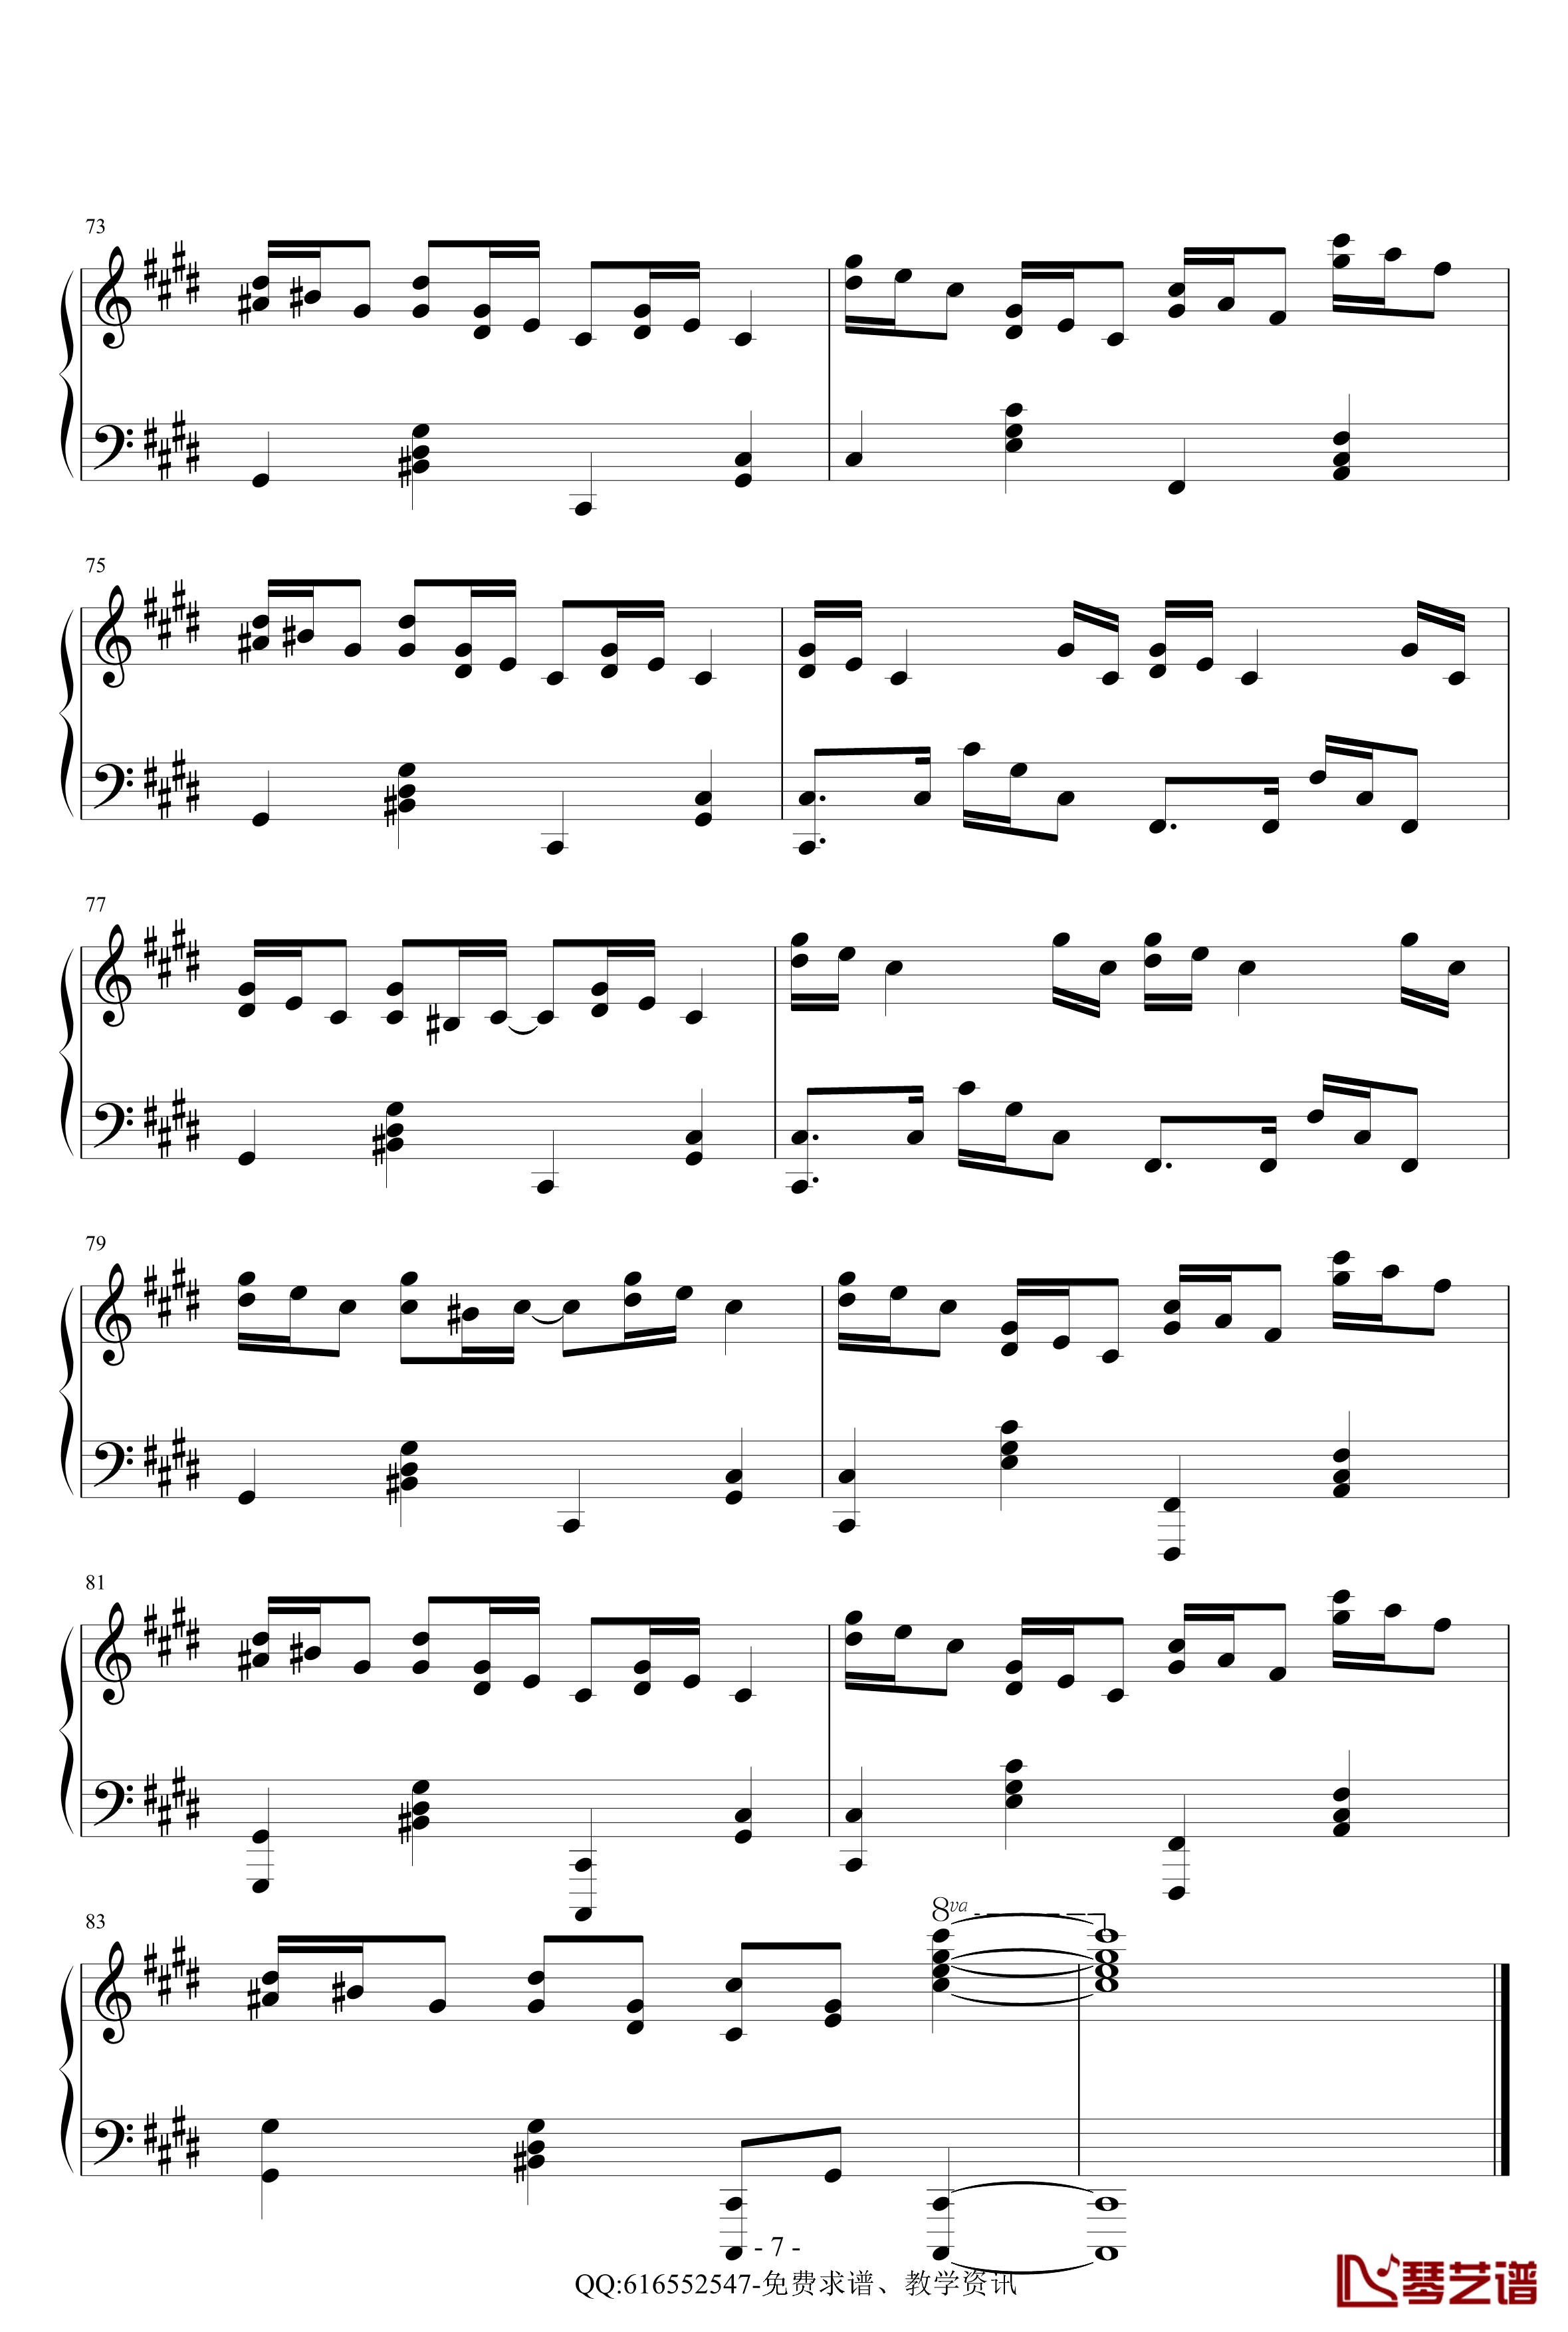 克罗地亚狂想曲钢琴谱-简化版-金龙鱼170427-马克西姆-Maksim·Mrvica7